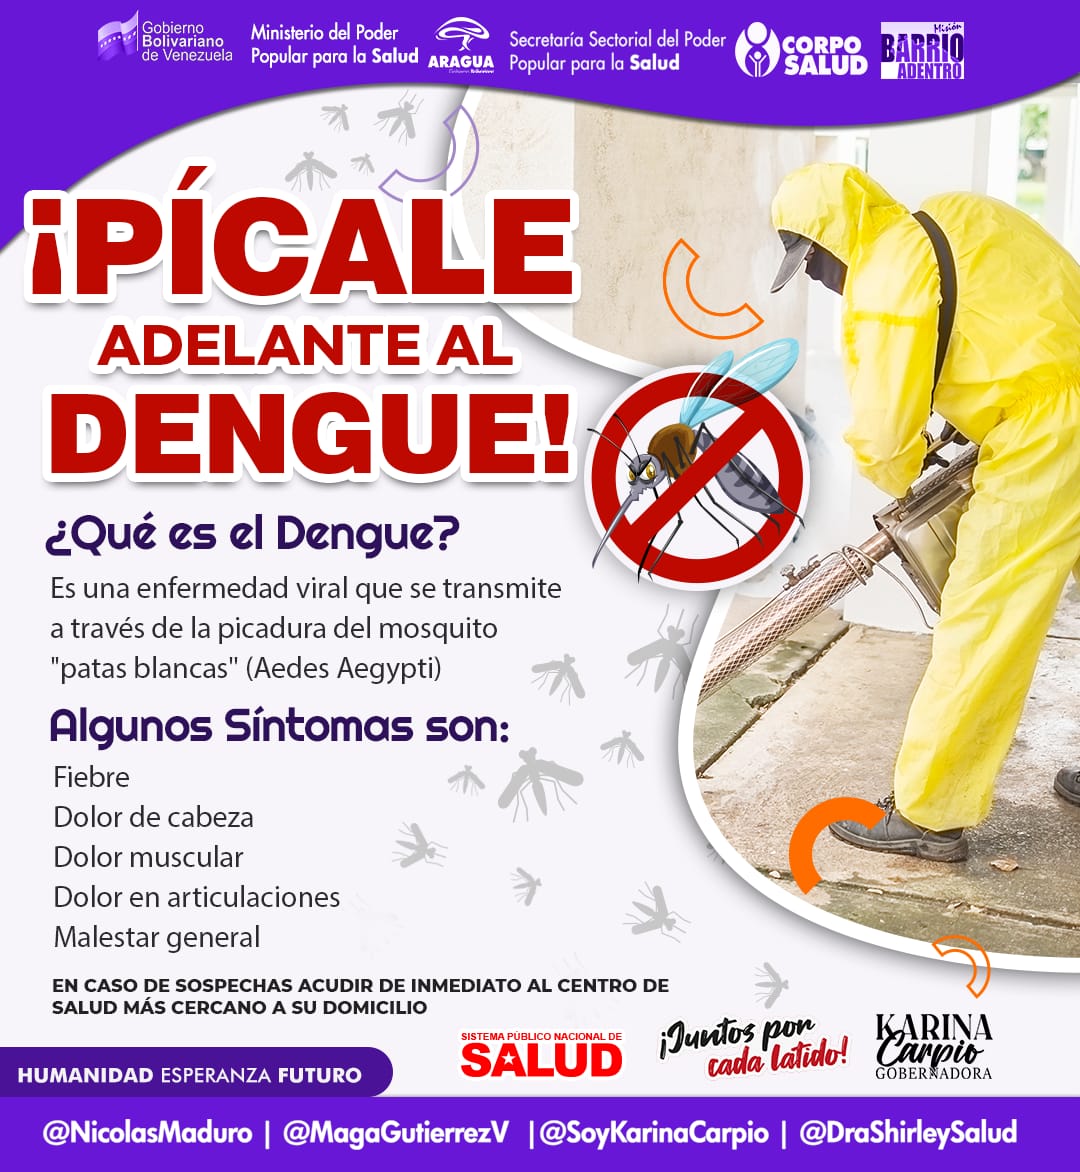 El @GobiernoAragua_  te  recuerda  que prevenir  es salud.  Toma precaución, no  dejes recipientes  con agua, limpia y previene  el Dengue. 

@SoyKarinaCarpio 
@DraShirleySalud

#14AñosDeAmorTricolor
 #VictoriaDeVenezuela